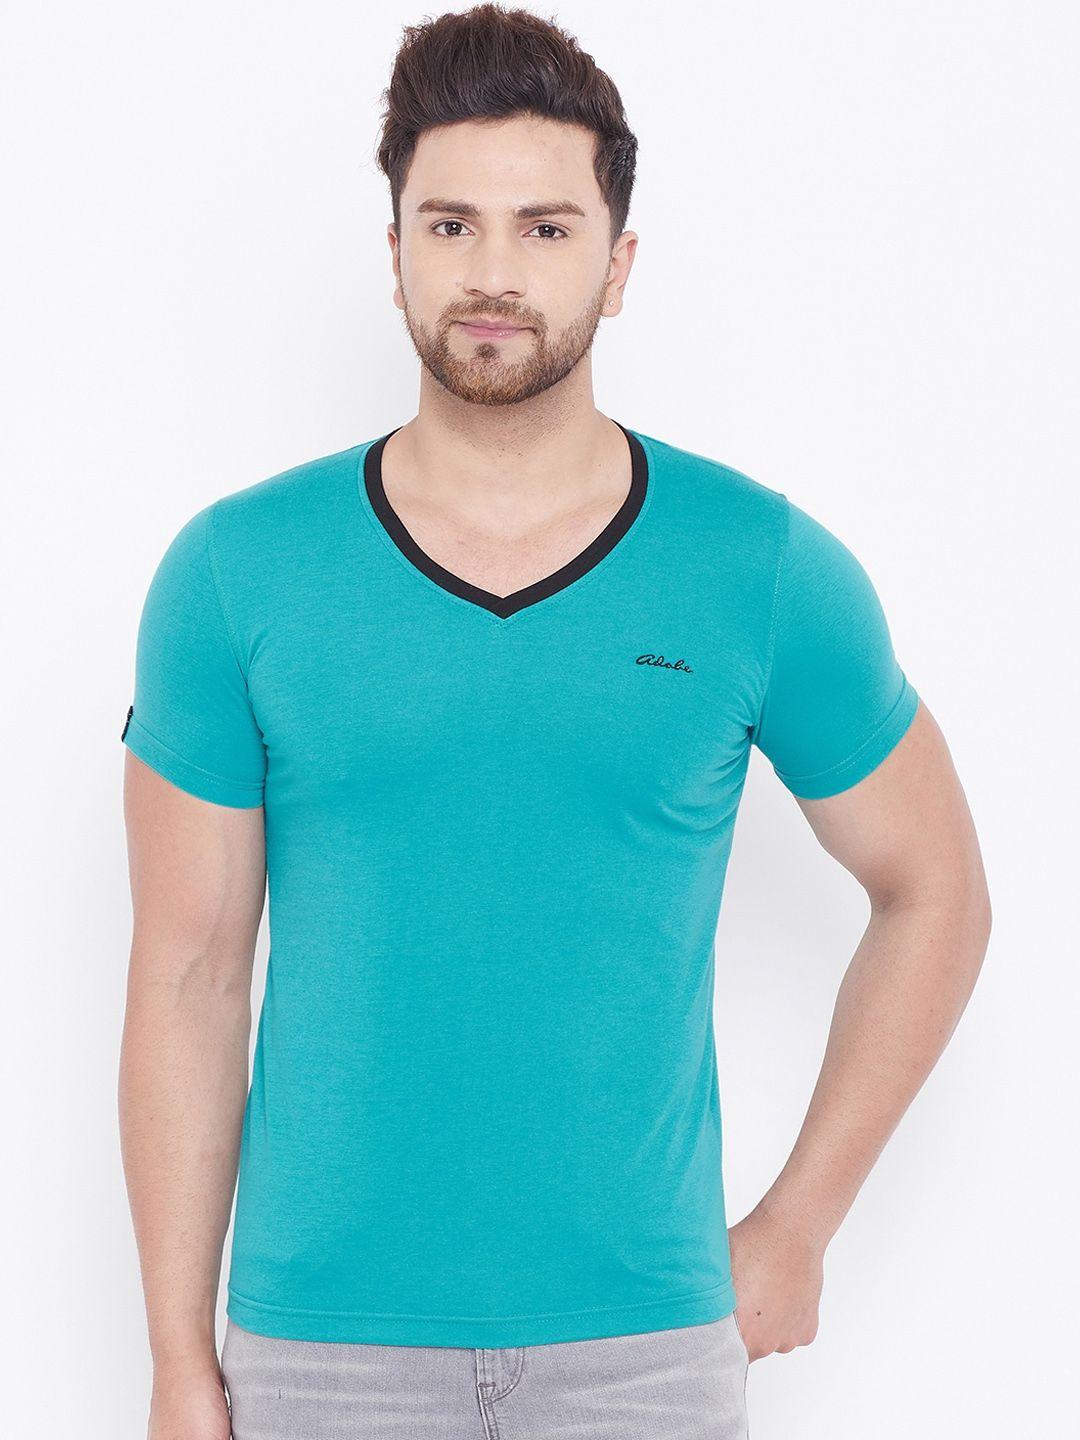 Adobe Men Turquoise Blue Solid V-Neck T-shirt